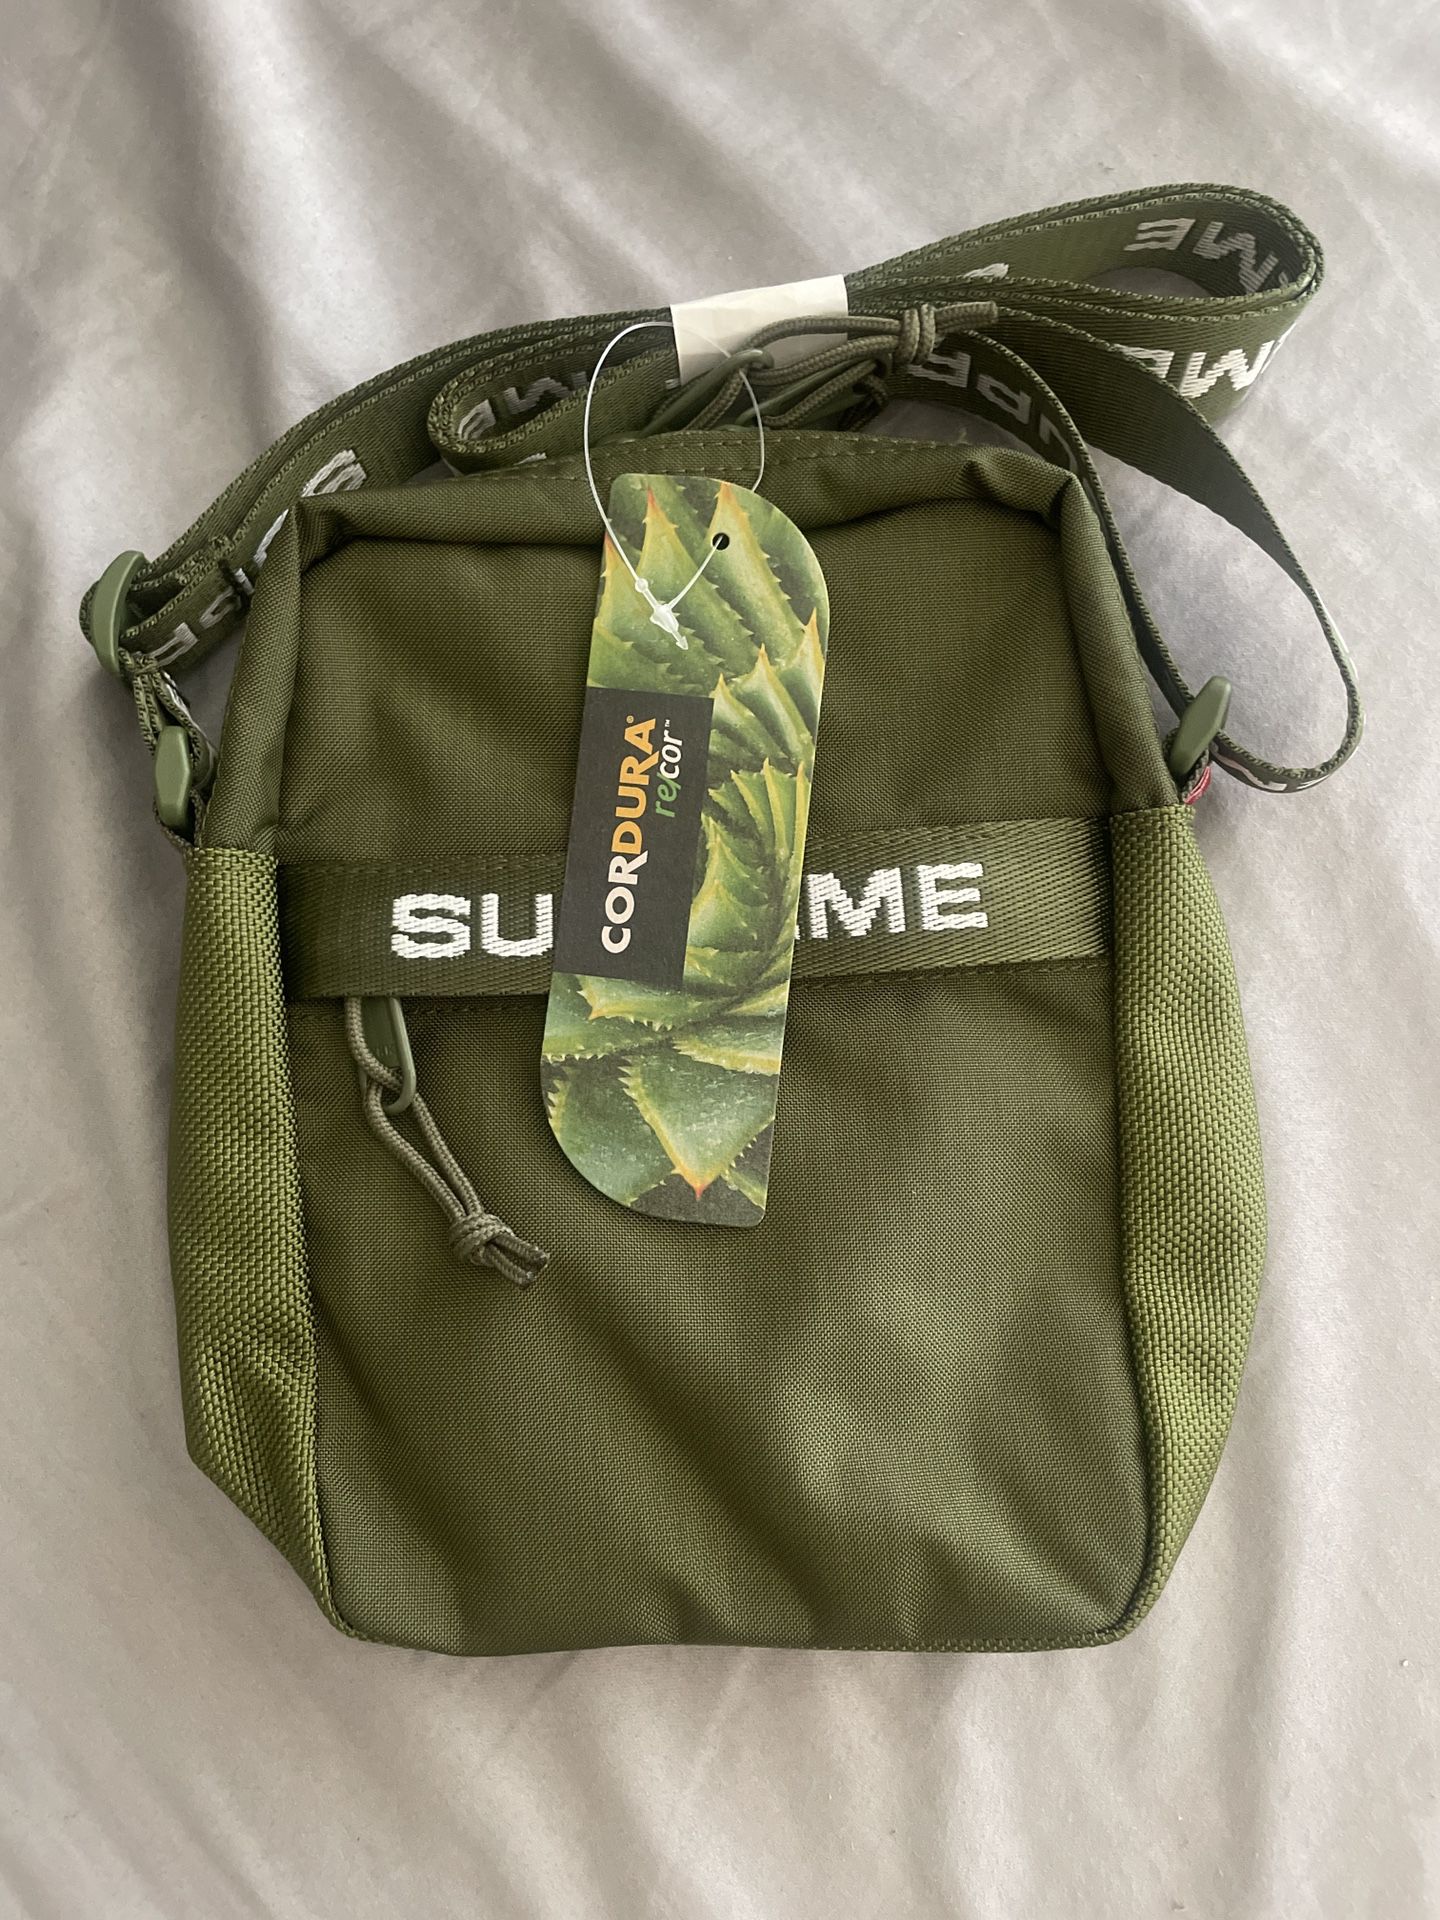 Supreme Shoulder Bag Olive FW22 for Sale in Fullerton, CA - OfferUp